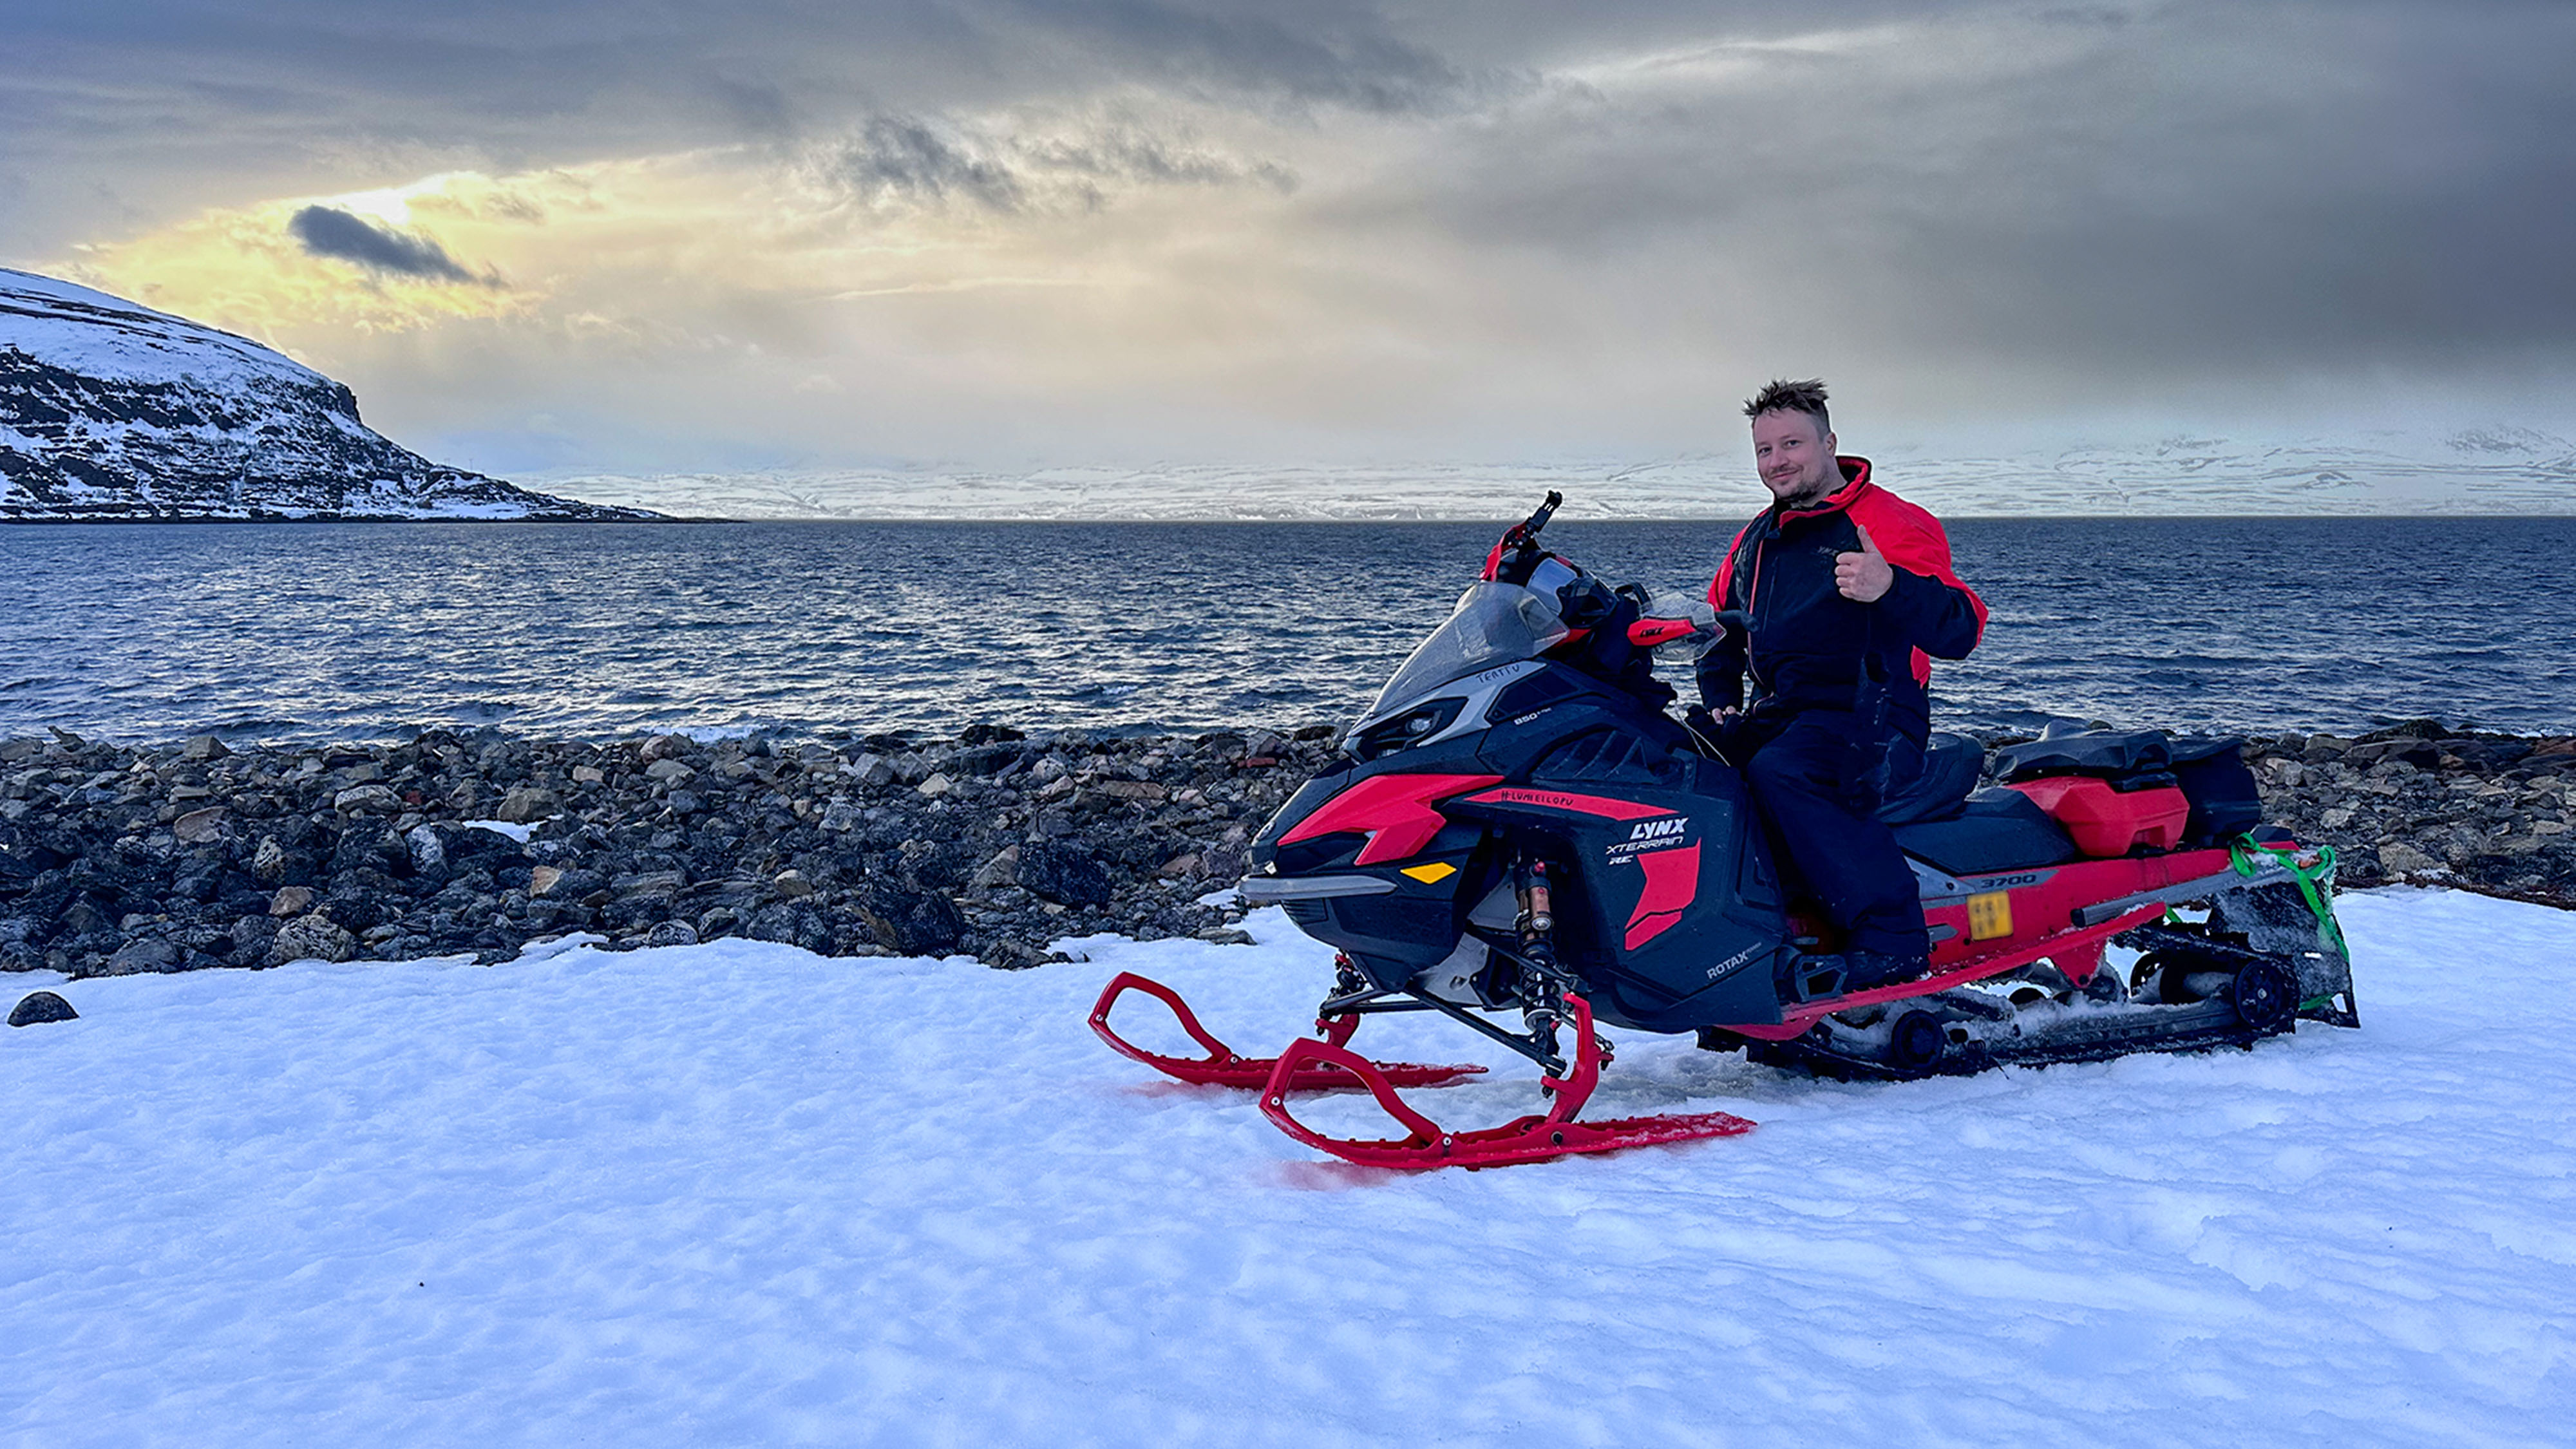 Joni Maununen assis sur sa motoneige Lynx Xterrain RE à côté de l'océan Arctique